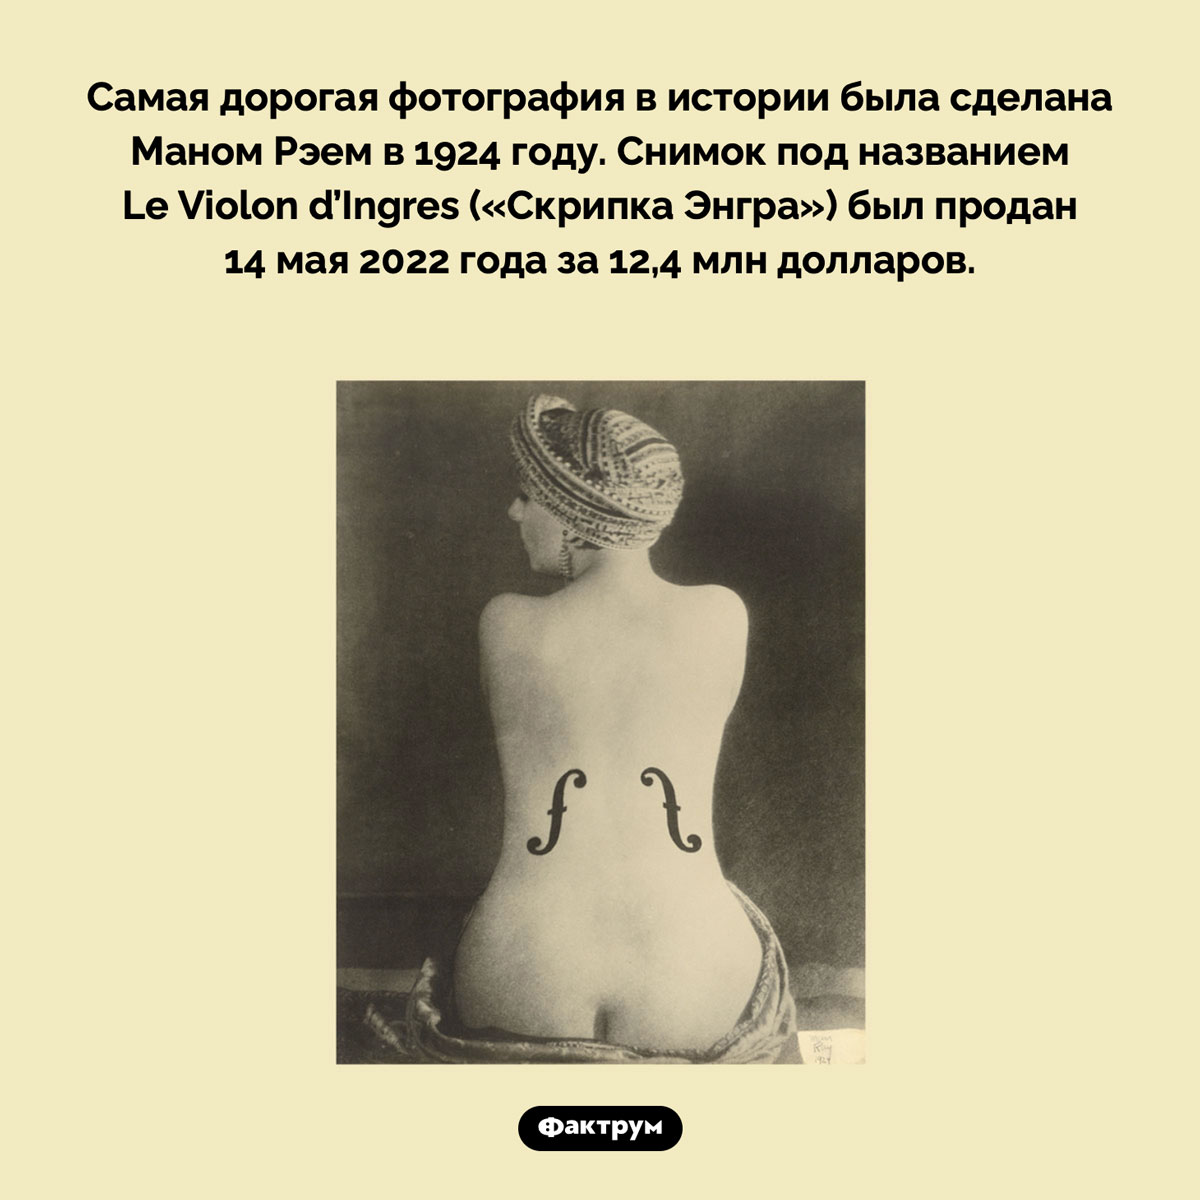 Самая дорогая фотография в истории. Самая дорогая фотография в истории была сделана Маном Рэем в 1924 году. Снимок под названием Le Violon d’Ingres («Скрипка Энгра») был продан 14 мая 2022 года за 12,4 млн долларов.